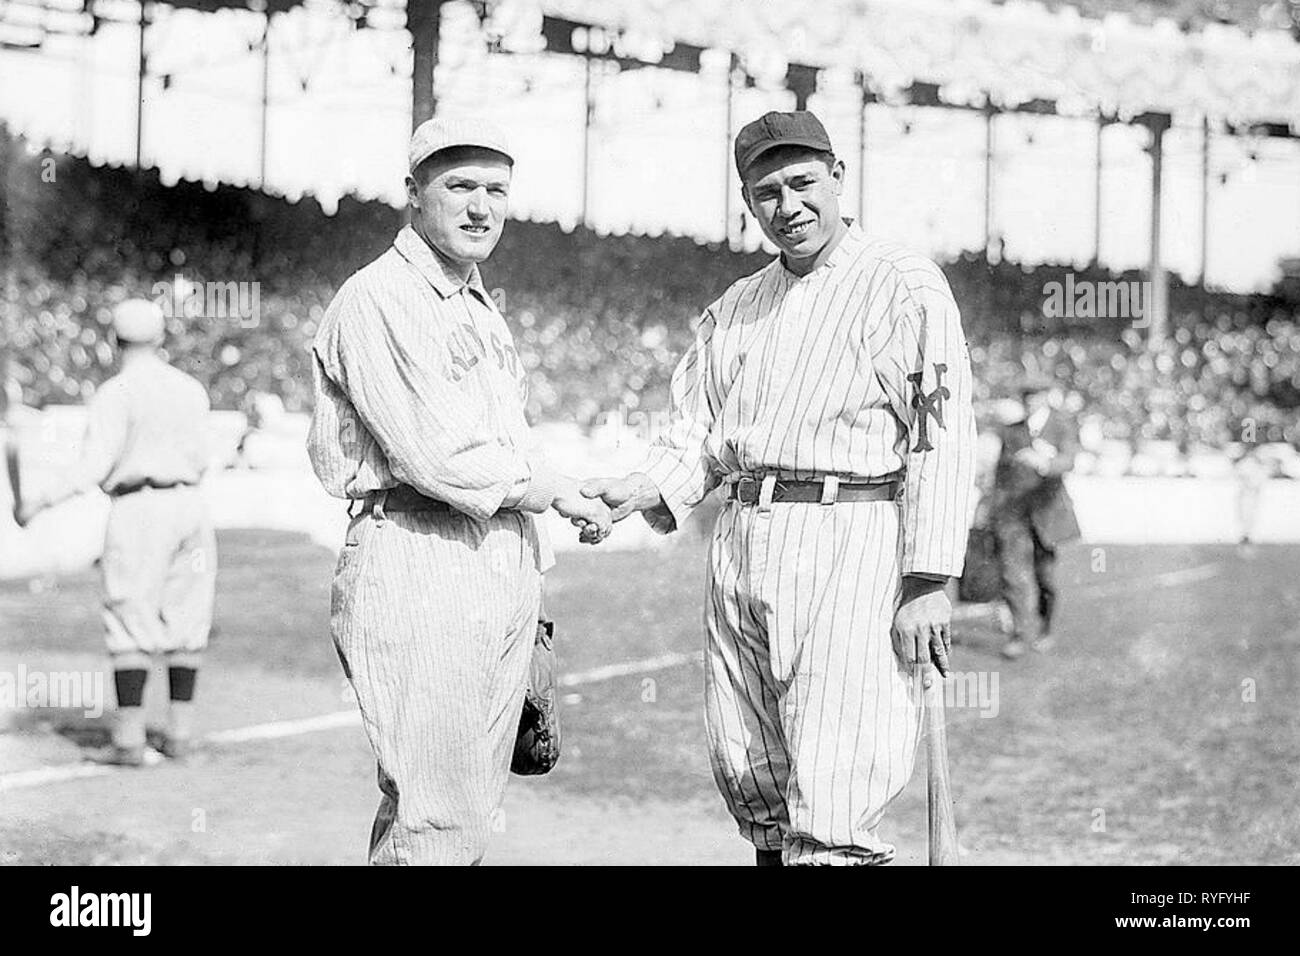 Bill Carrigan, Boston Red Sox et chef de Meyers, les Giants de New York, au cours de la série au Polo Grounds, New York, 1912. Banque D'Images